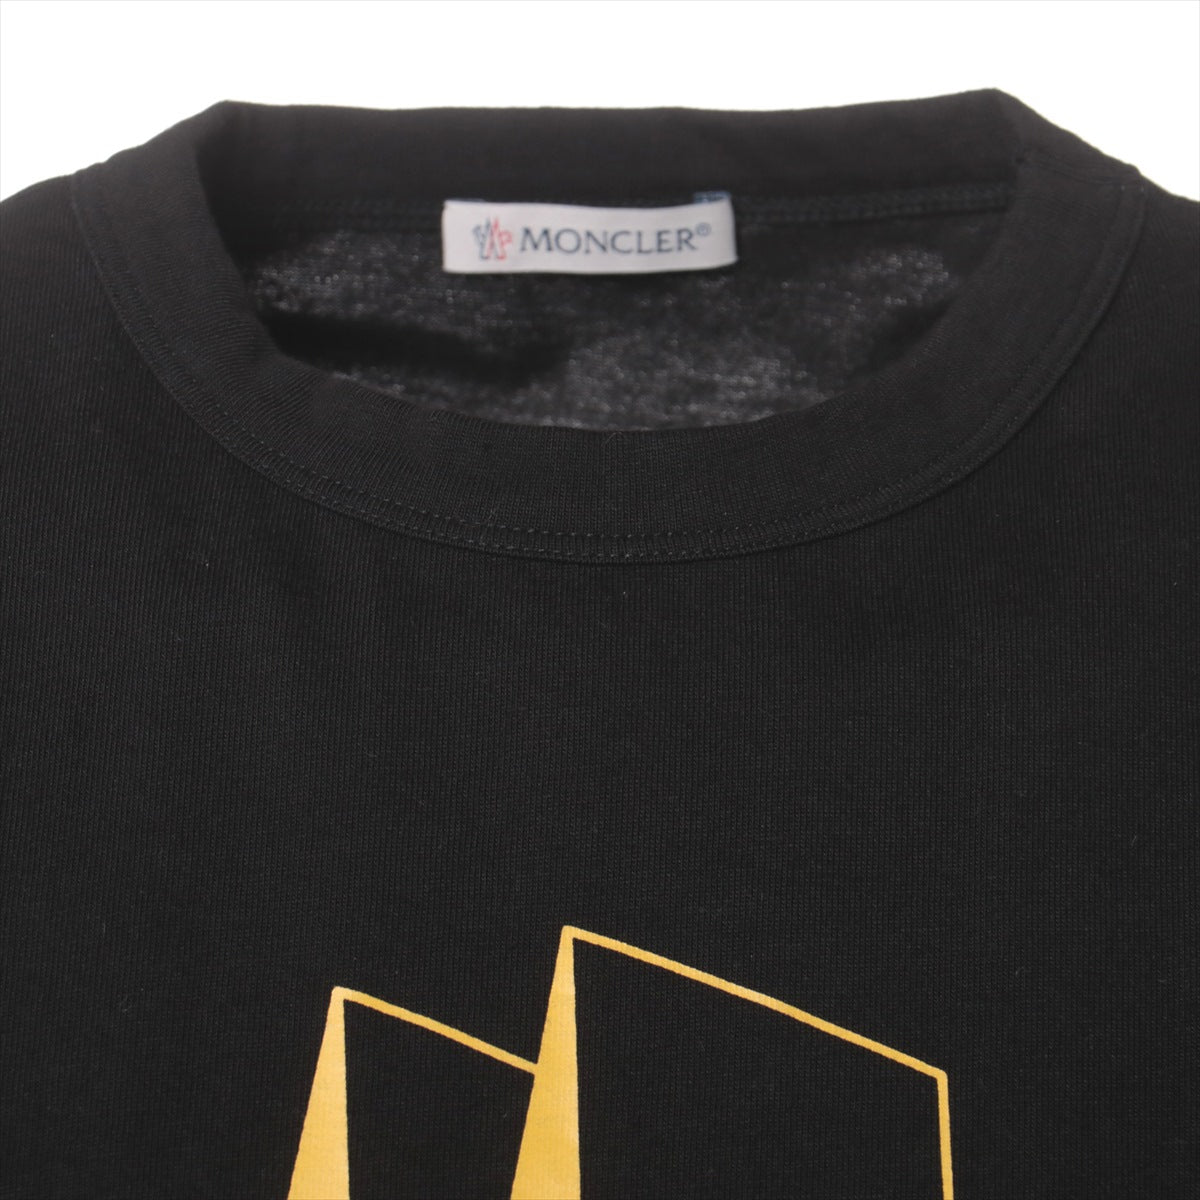 Moncler 19-year Cotton T-shirt S Men's Black  E20918002250